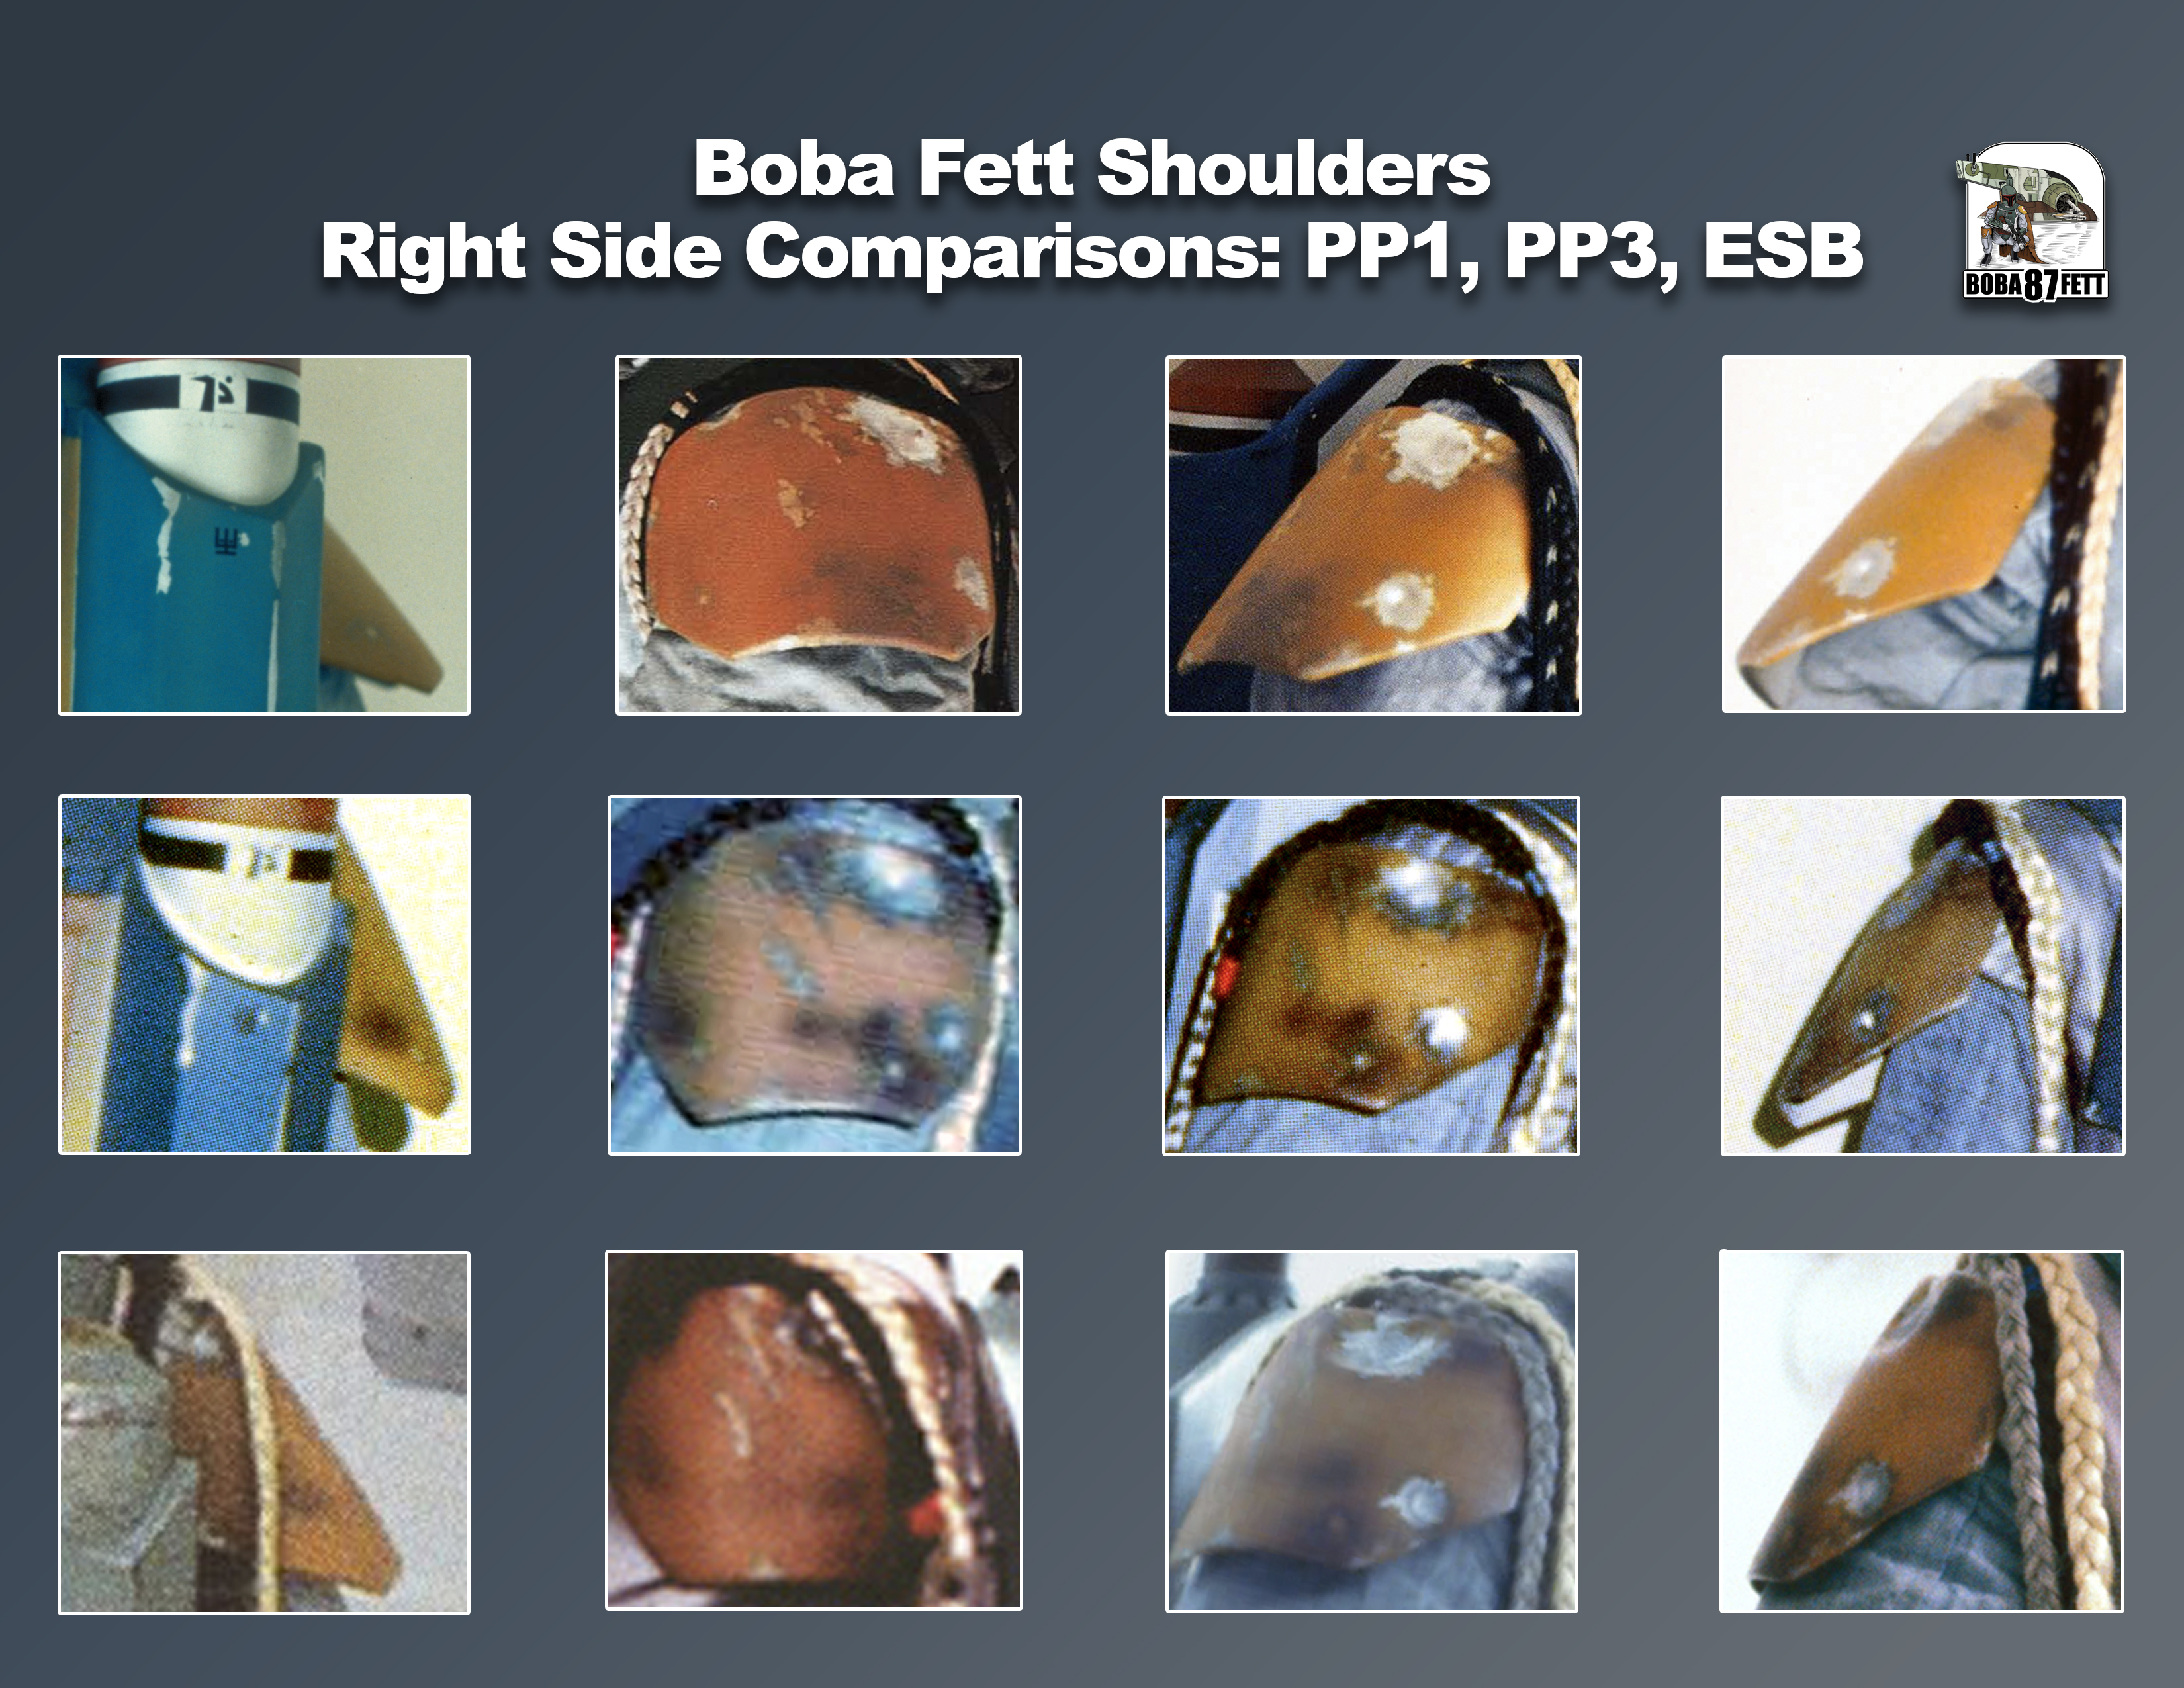 Boba-Fett-Shoulders-Comparison-Right-PP1-PP3-ESB.jpg